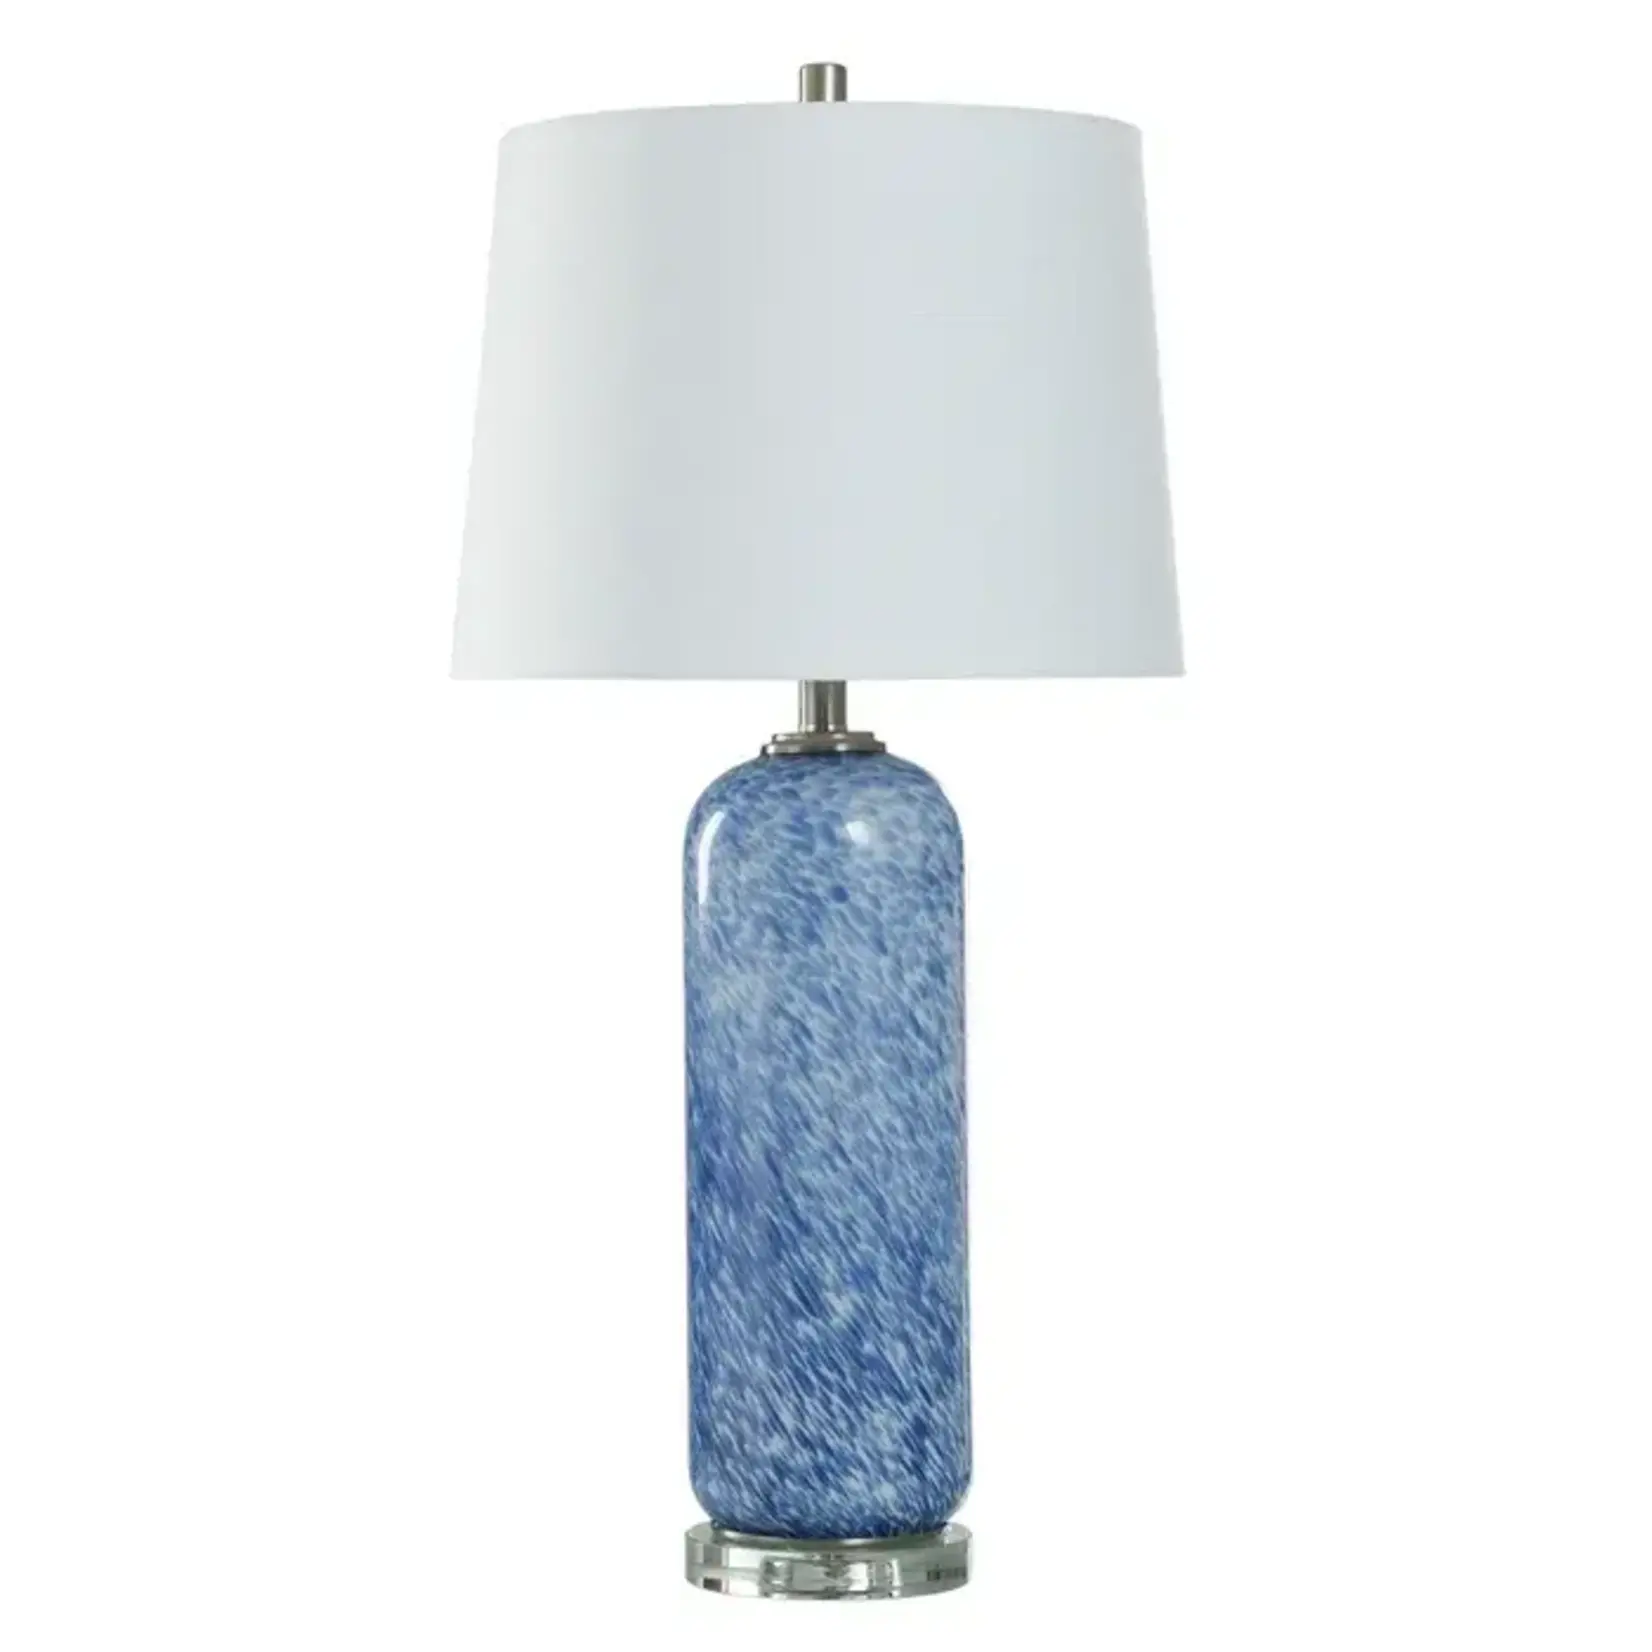 Stylecraft Lamp L333537